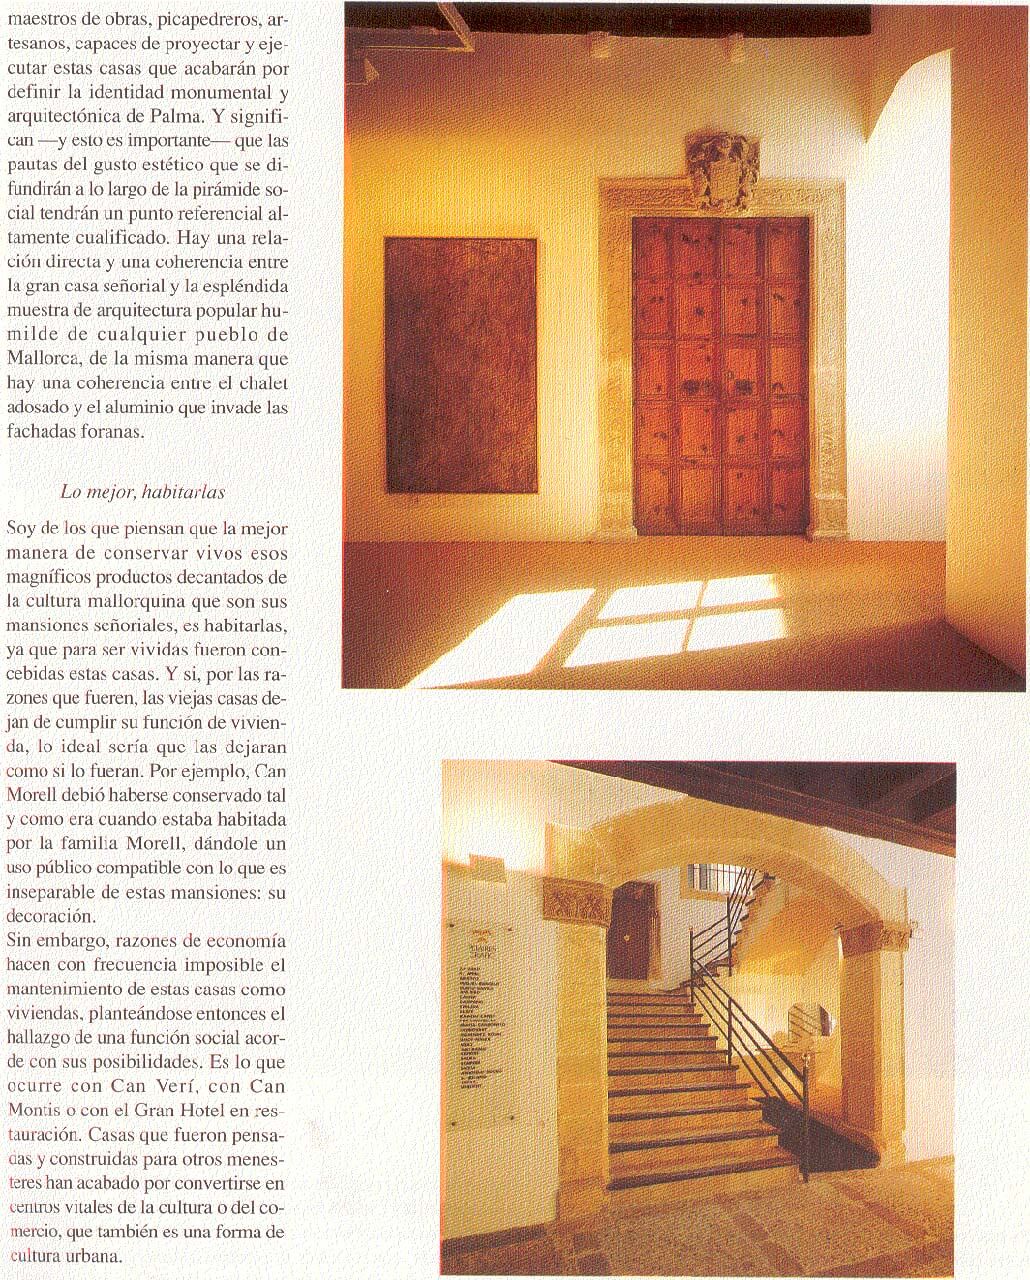 revista 1991 gala 03 antonio obrador 05